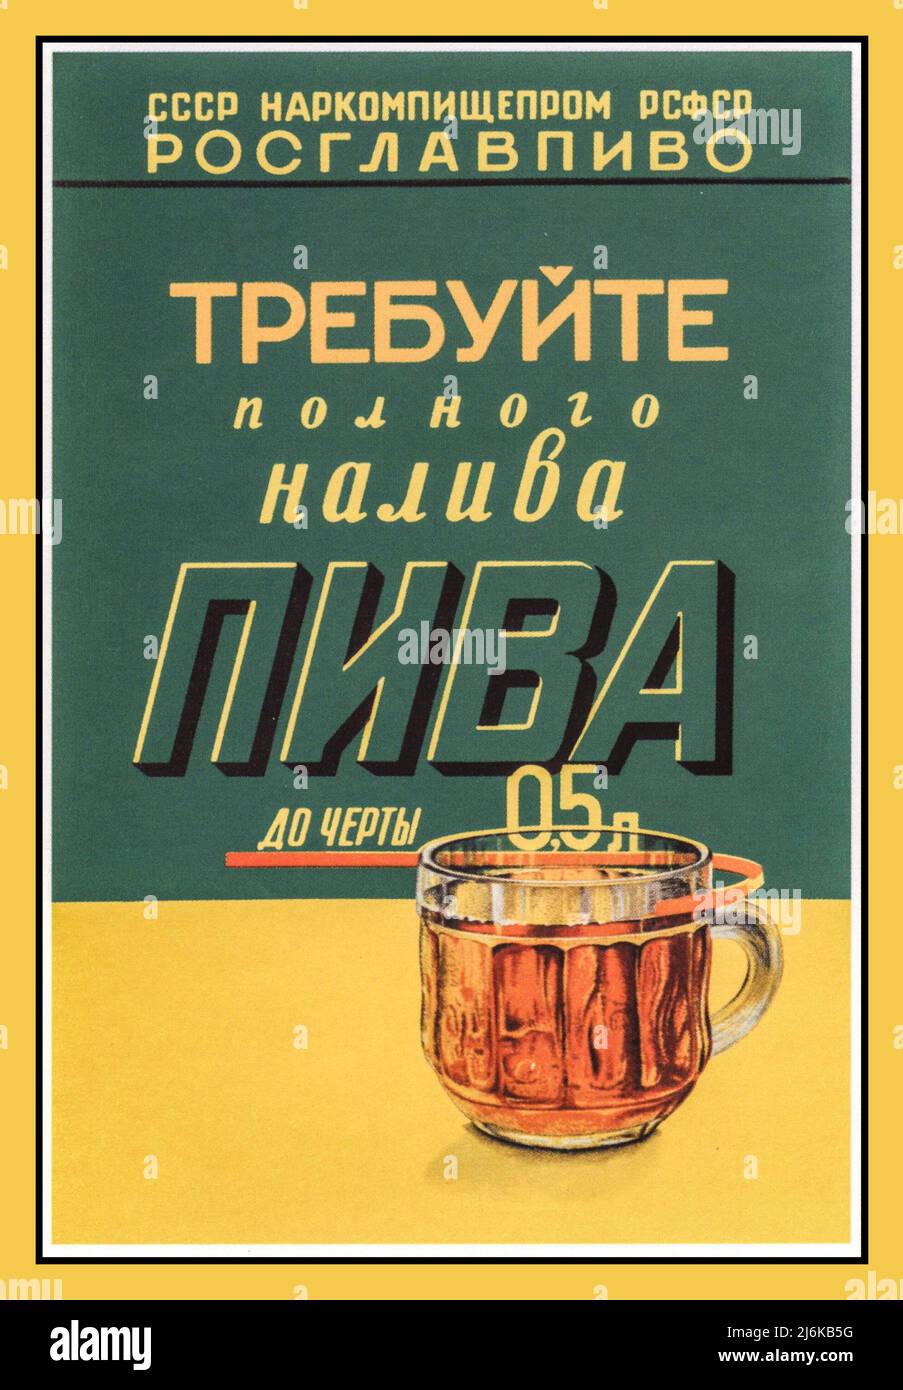 Poster pubblicitario vintage russo in tempo di guerra del Commissariato popolare per l'industria alimentare dell'URSS "e una birra piena alla linea di 0,5 litri". Mosca, 1940. Unione Sovietica Russia Foto Stock